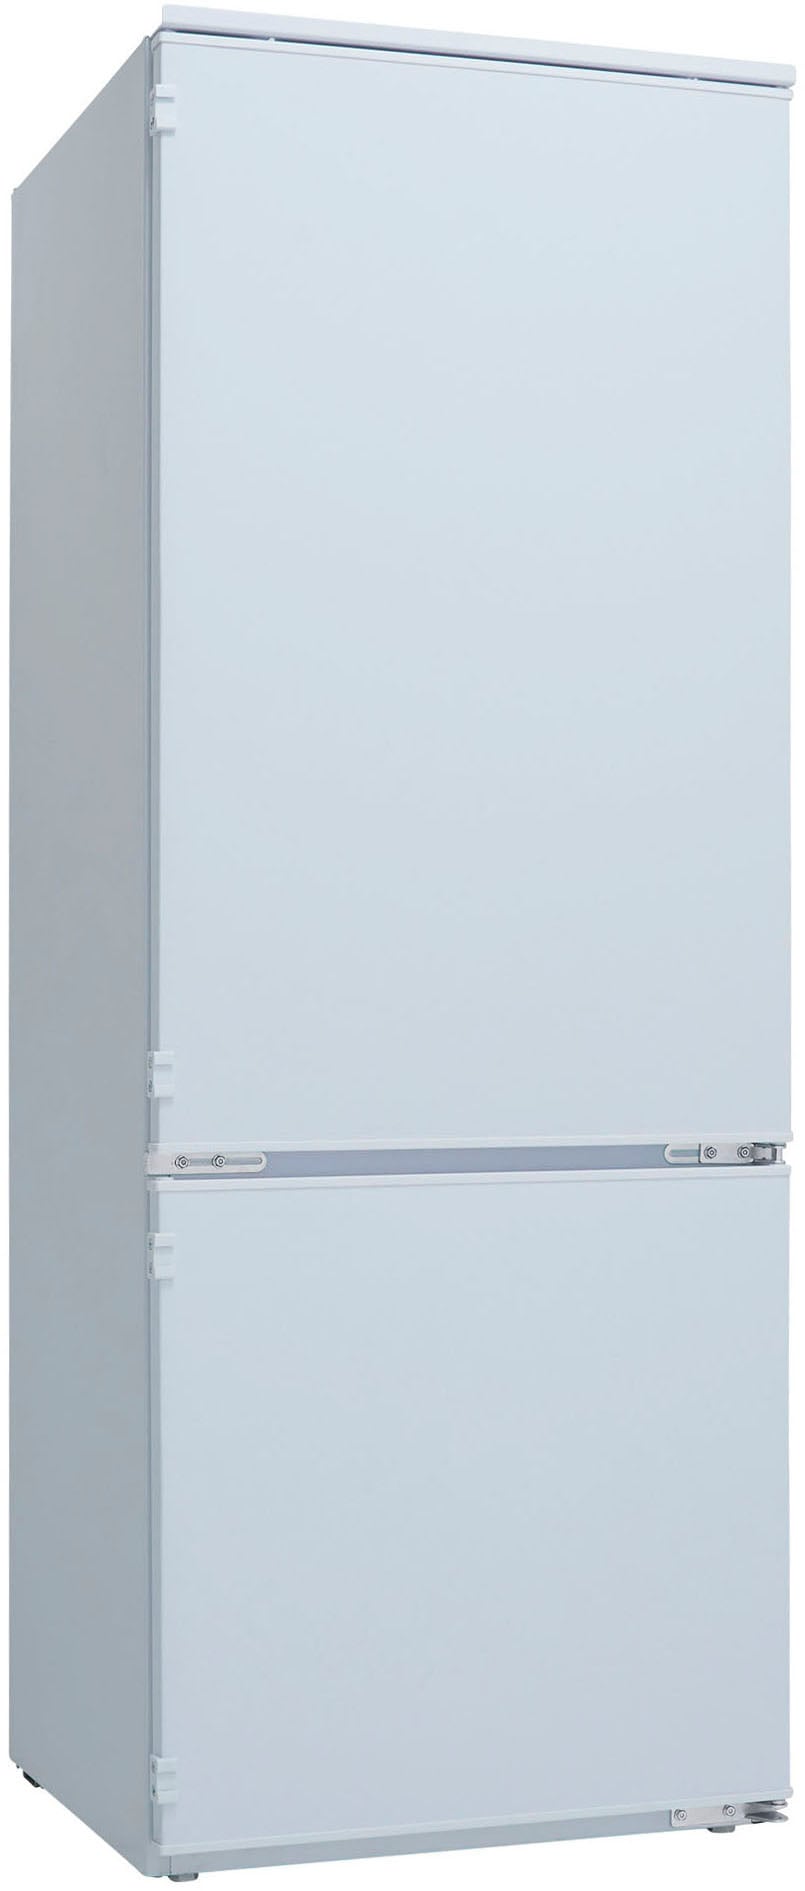 RESPEKTA Einbaukühlgefrierkombination, KGE144, 144 cm hoch, 54 cm breit